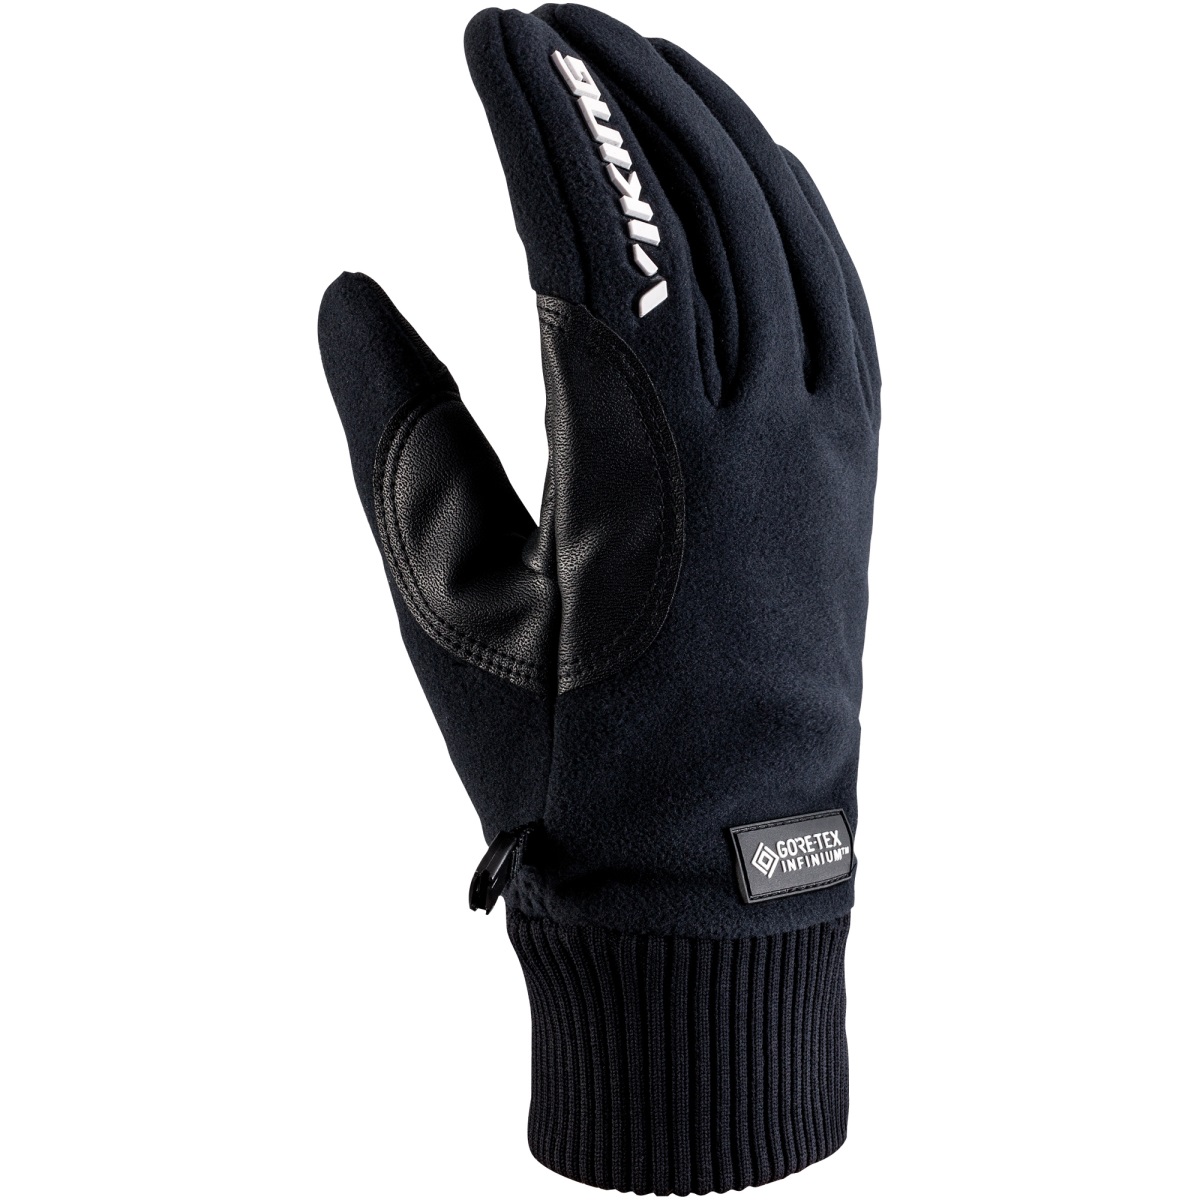 Unisex sportovní rukavice viking solano černá 6